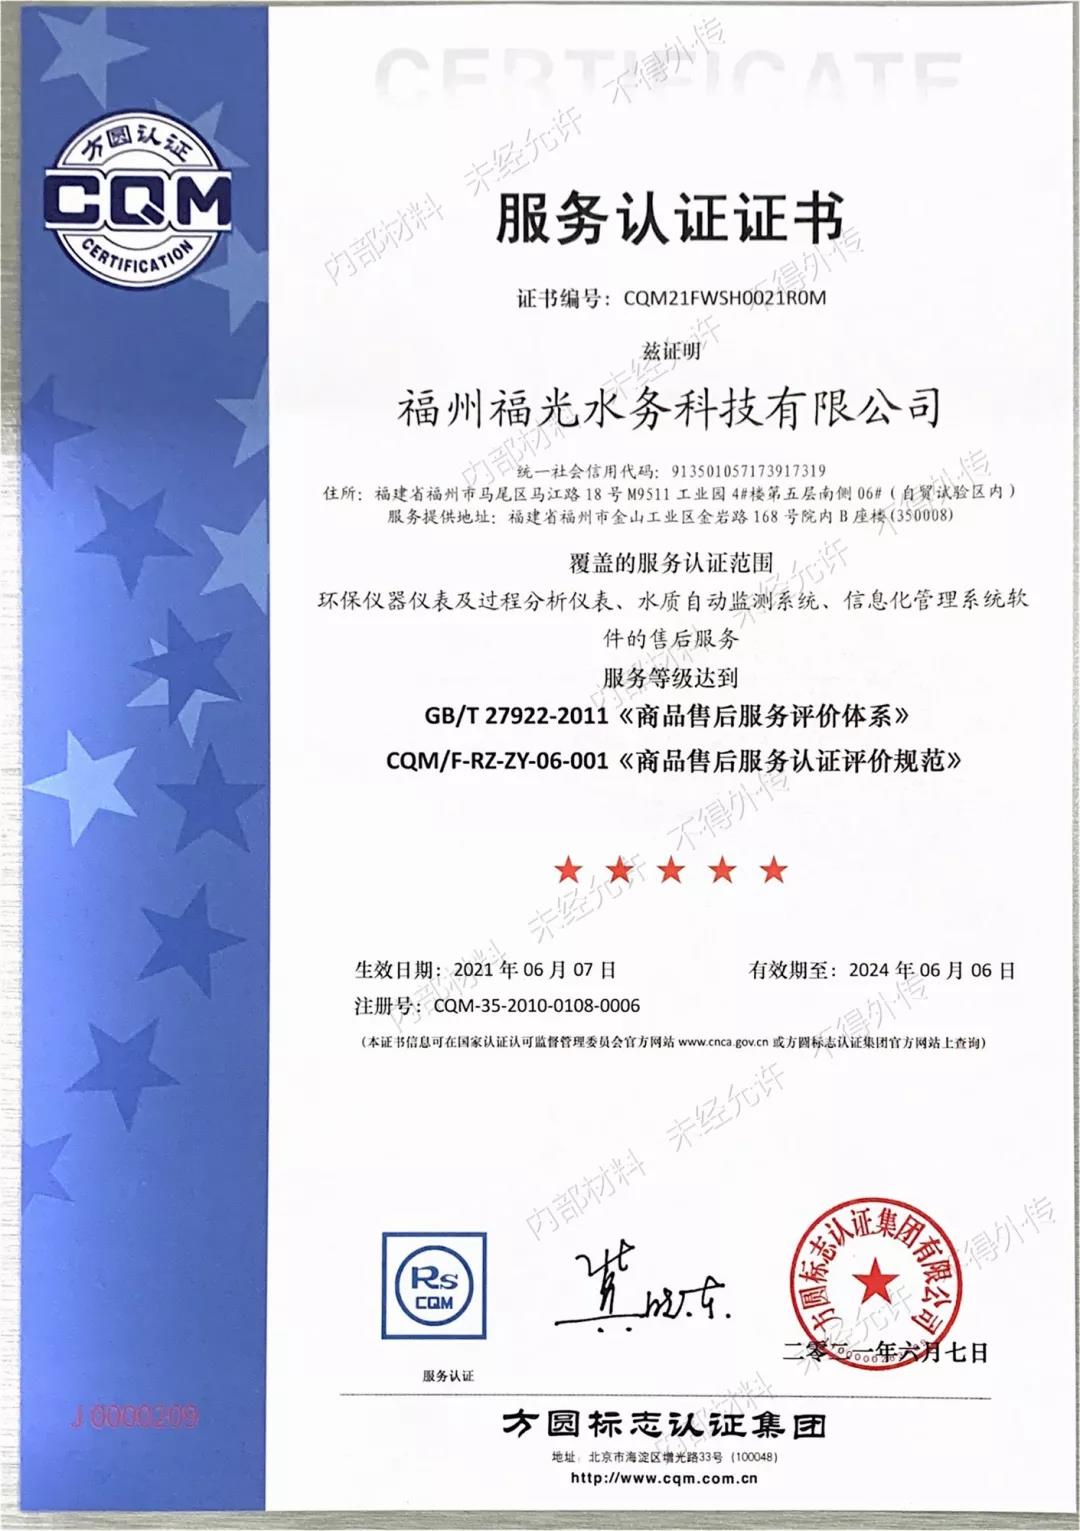 凭借高质量服务 福光水务荣获五星售后服务认证证书